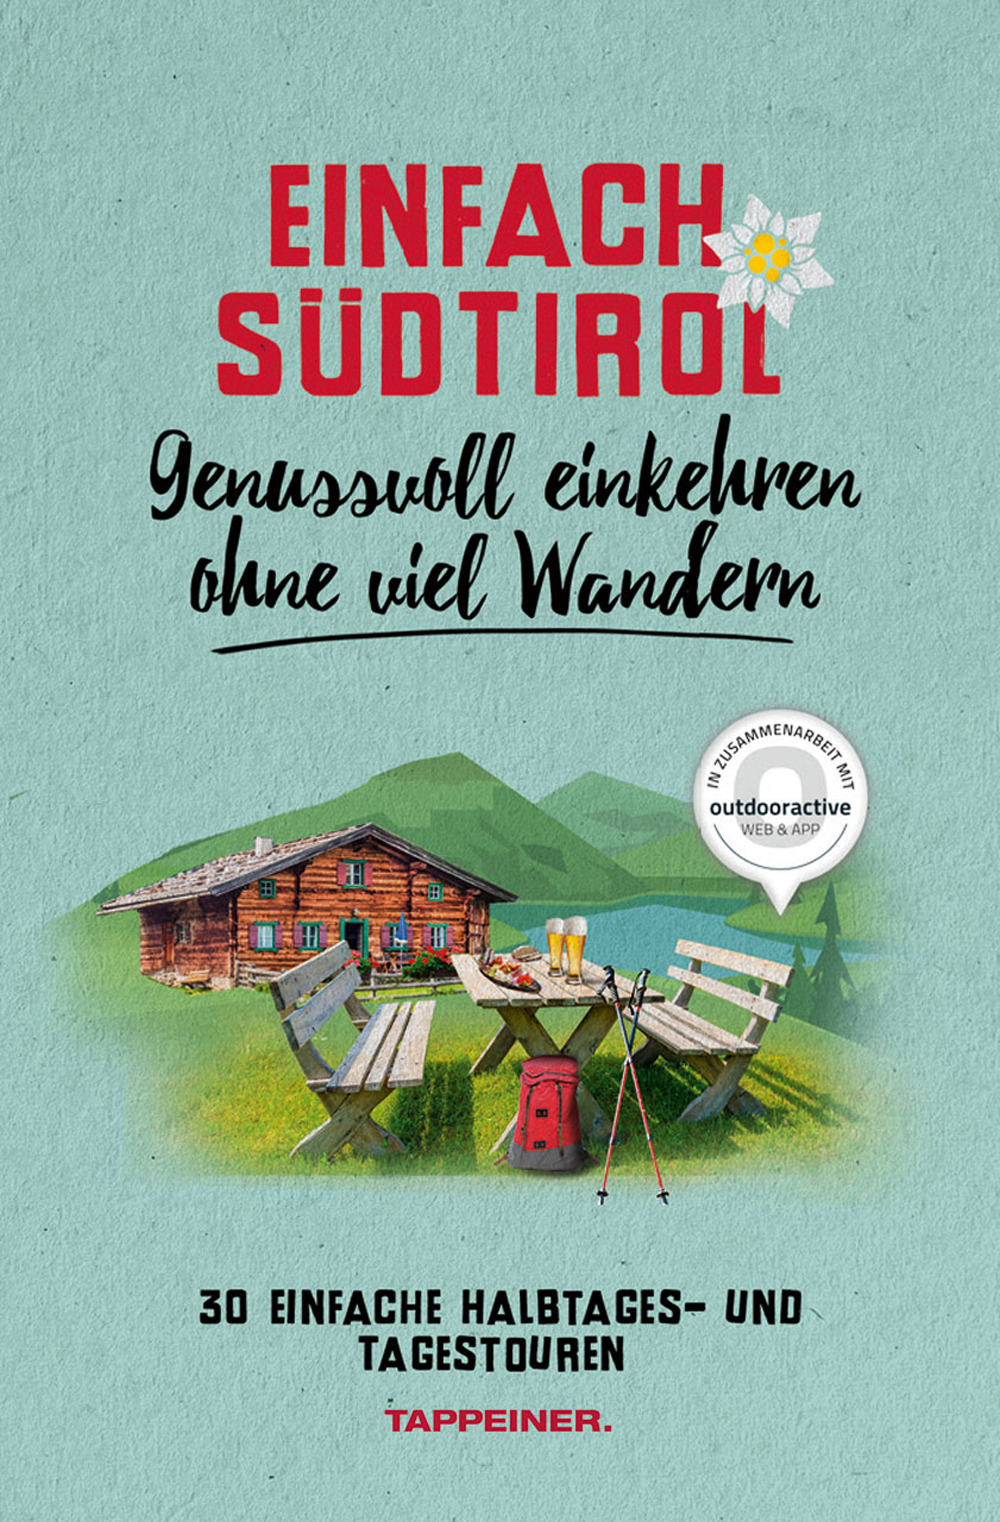 Einfach Südtirol. Genussvoll einkehren ohne viel Wandern. 30 einfache Halbtages und Tagestouren